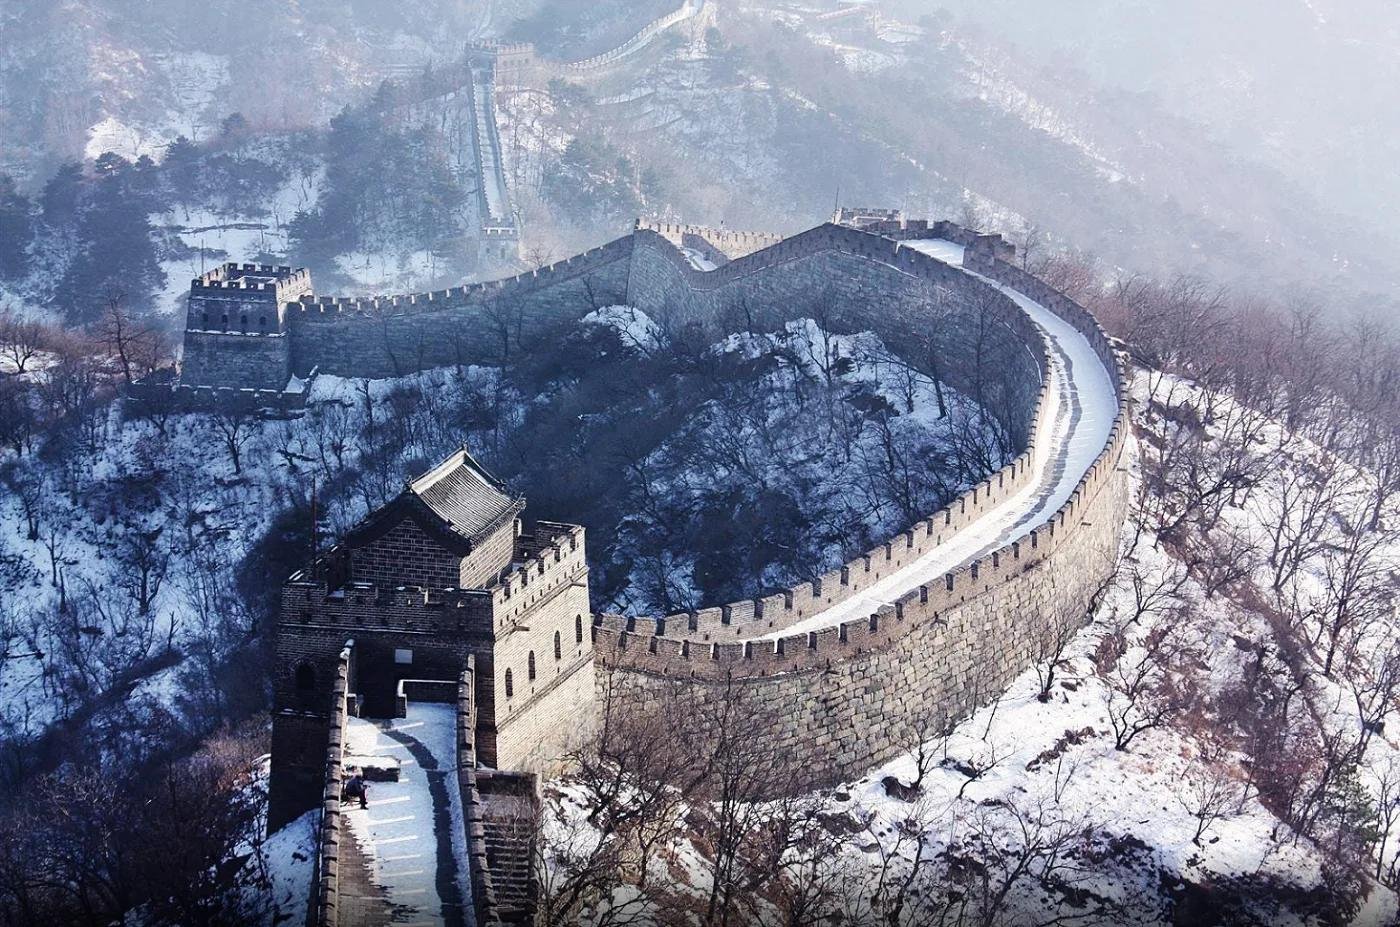 Легенды великой стены. Китай Великая китайская стена. Пекин китайская стена. Великая китайская стена (Северный Китай). Великая китайская стена Династия Цинь.